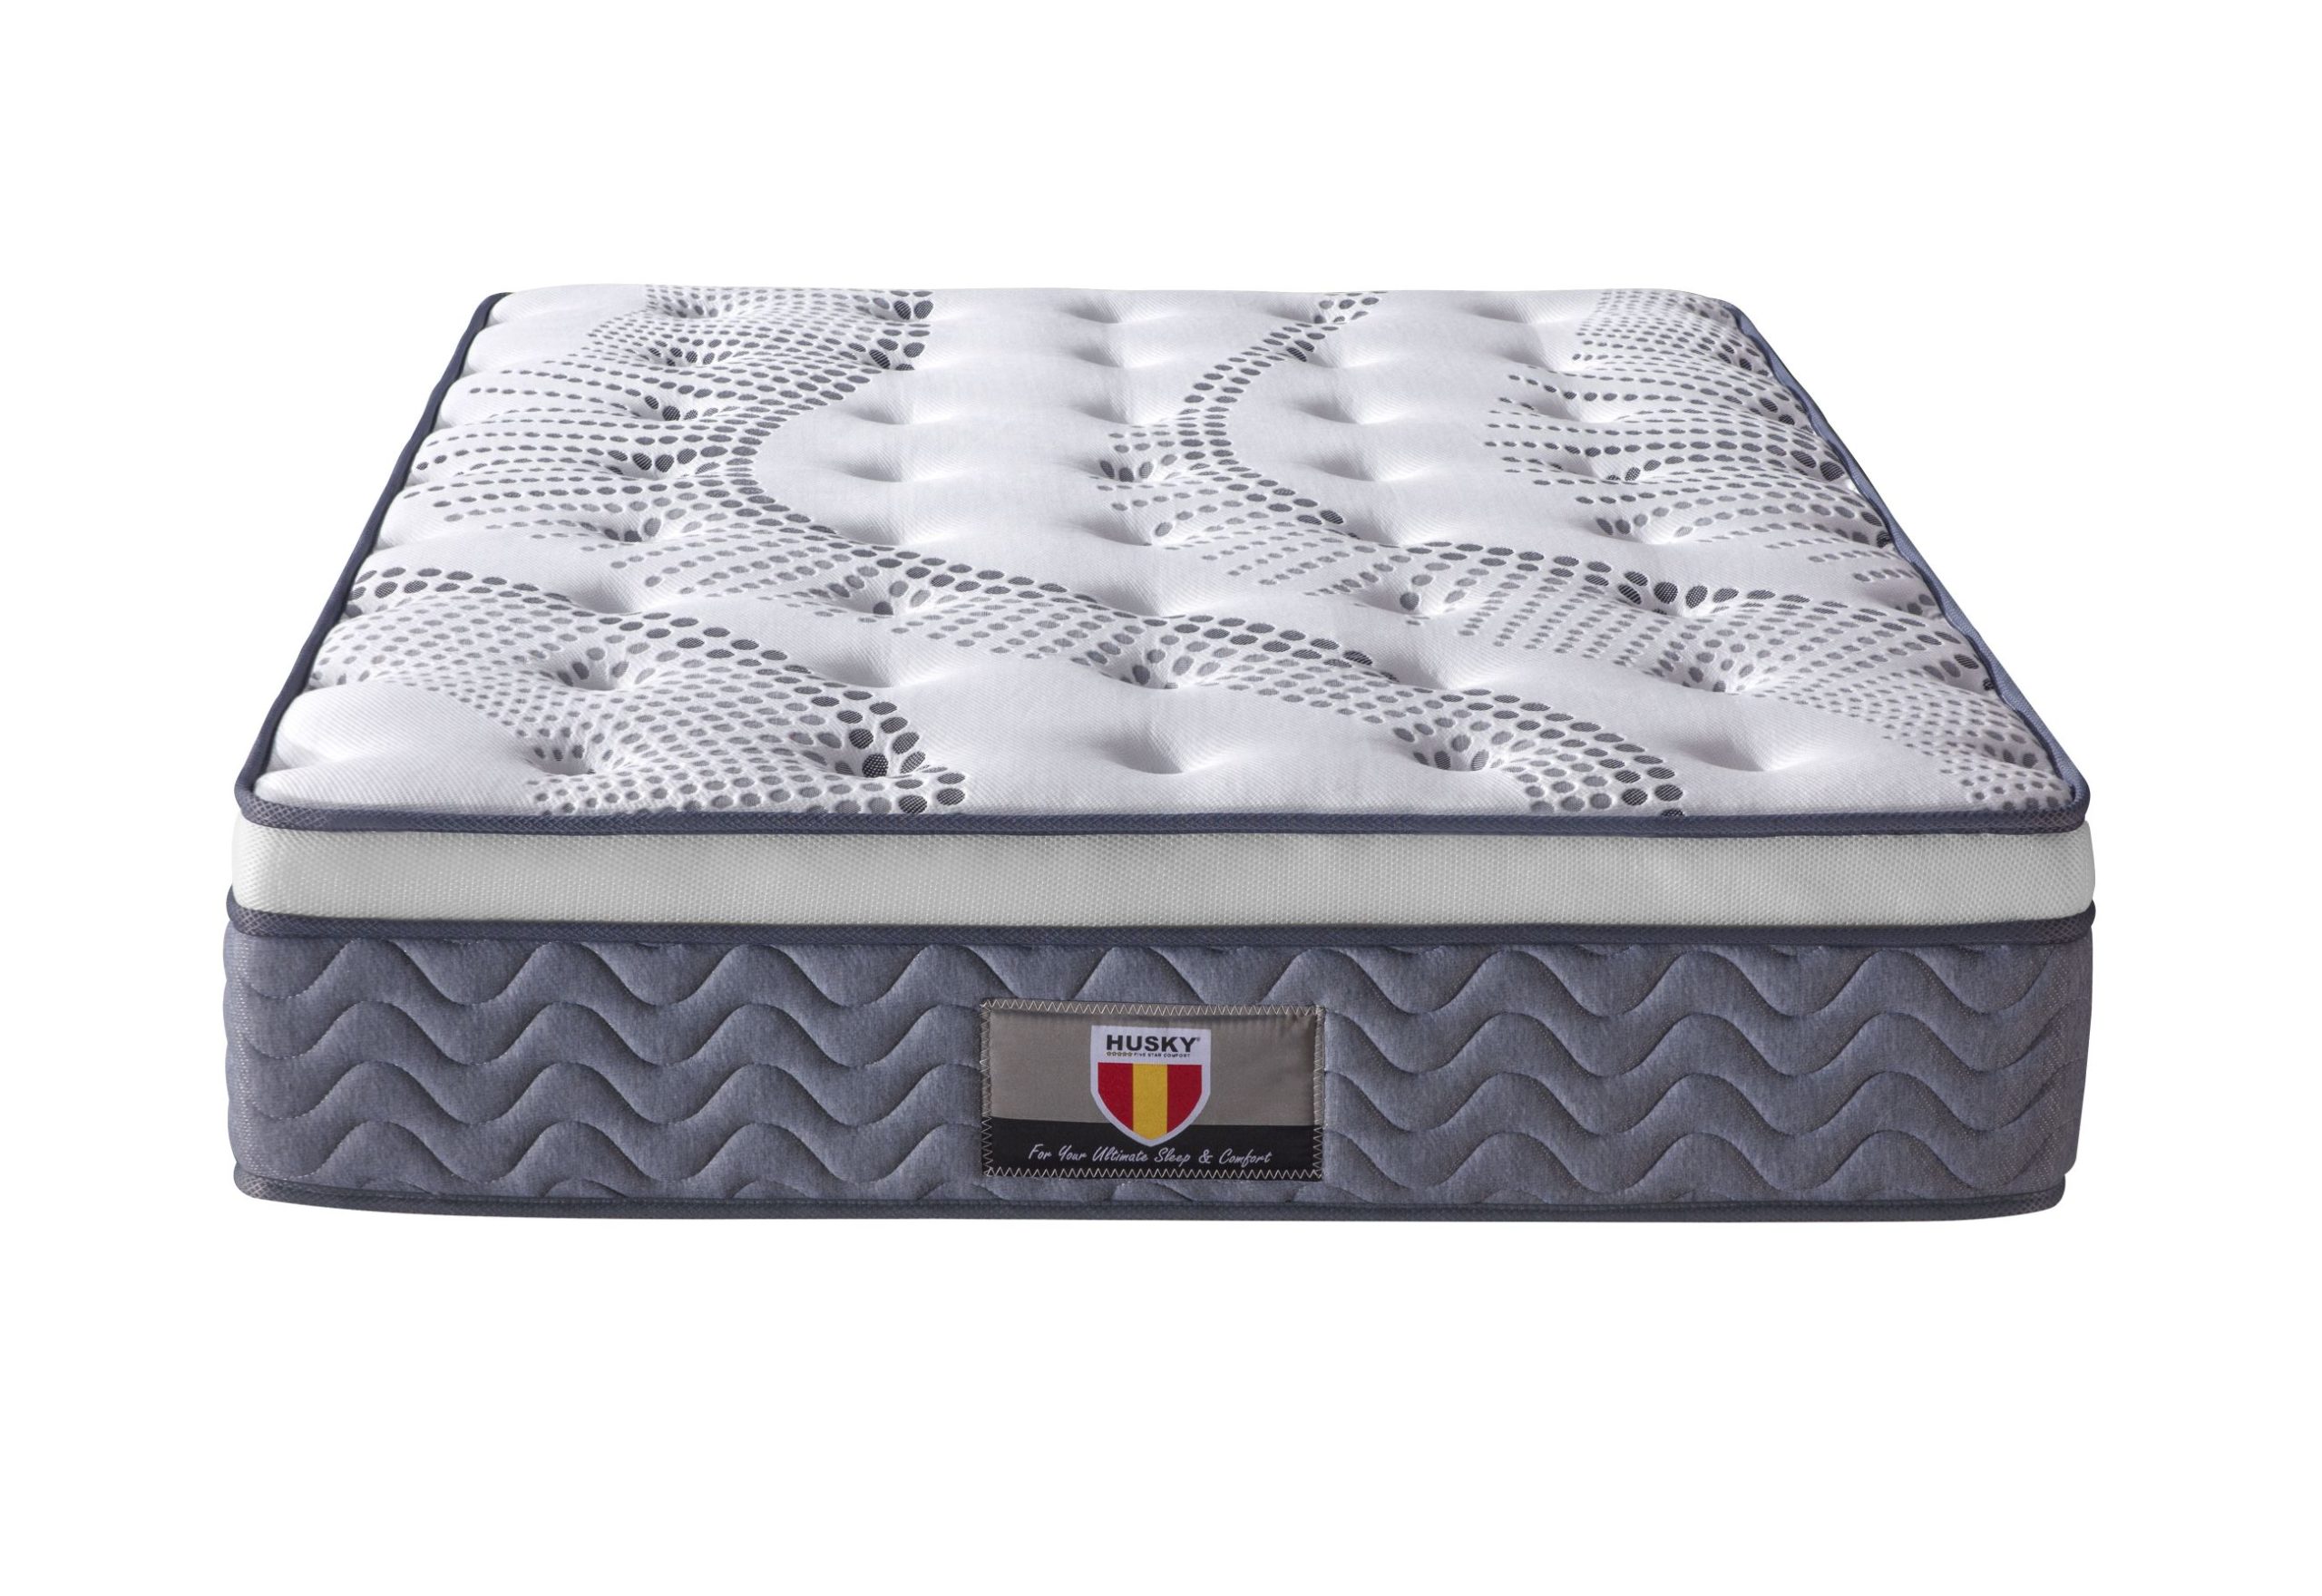 udream celeste mattress review